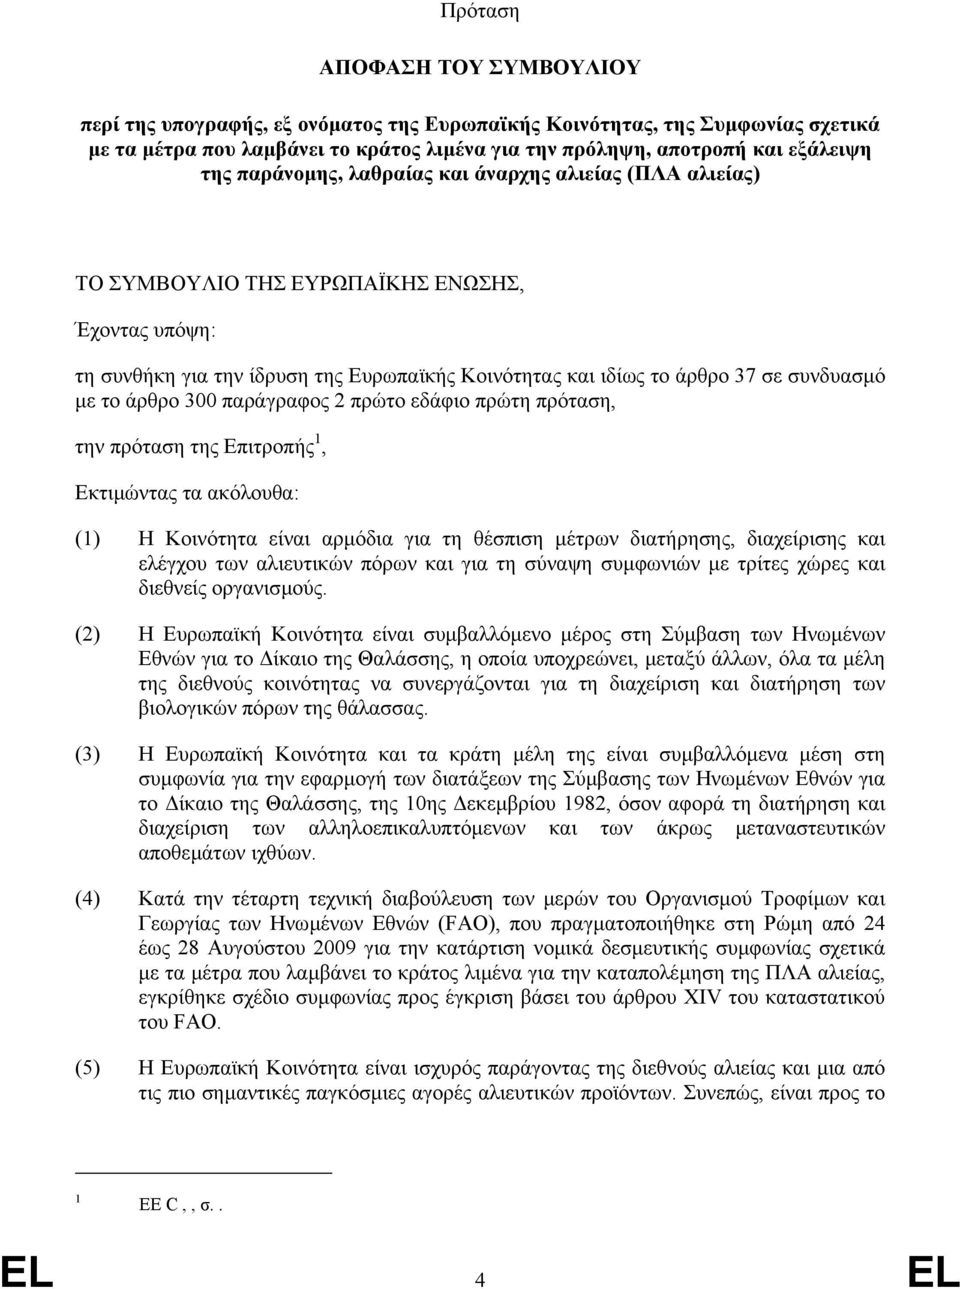 άρθρο 300 παράγραφος 2 πρώτο εδάφιο πρώτη πρόταση, την πρόταση της Επιτροπής 1, Εκτιµώντας τα ακόλουθα: (1) Η Κοινότητα είναι αρµόδια για τη θέσπιση µέτρων διατήρησης, διαχείρισης και ελέγχου των